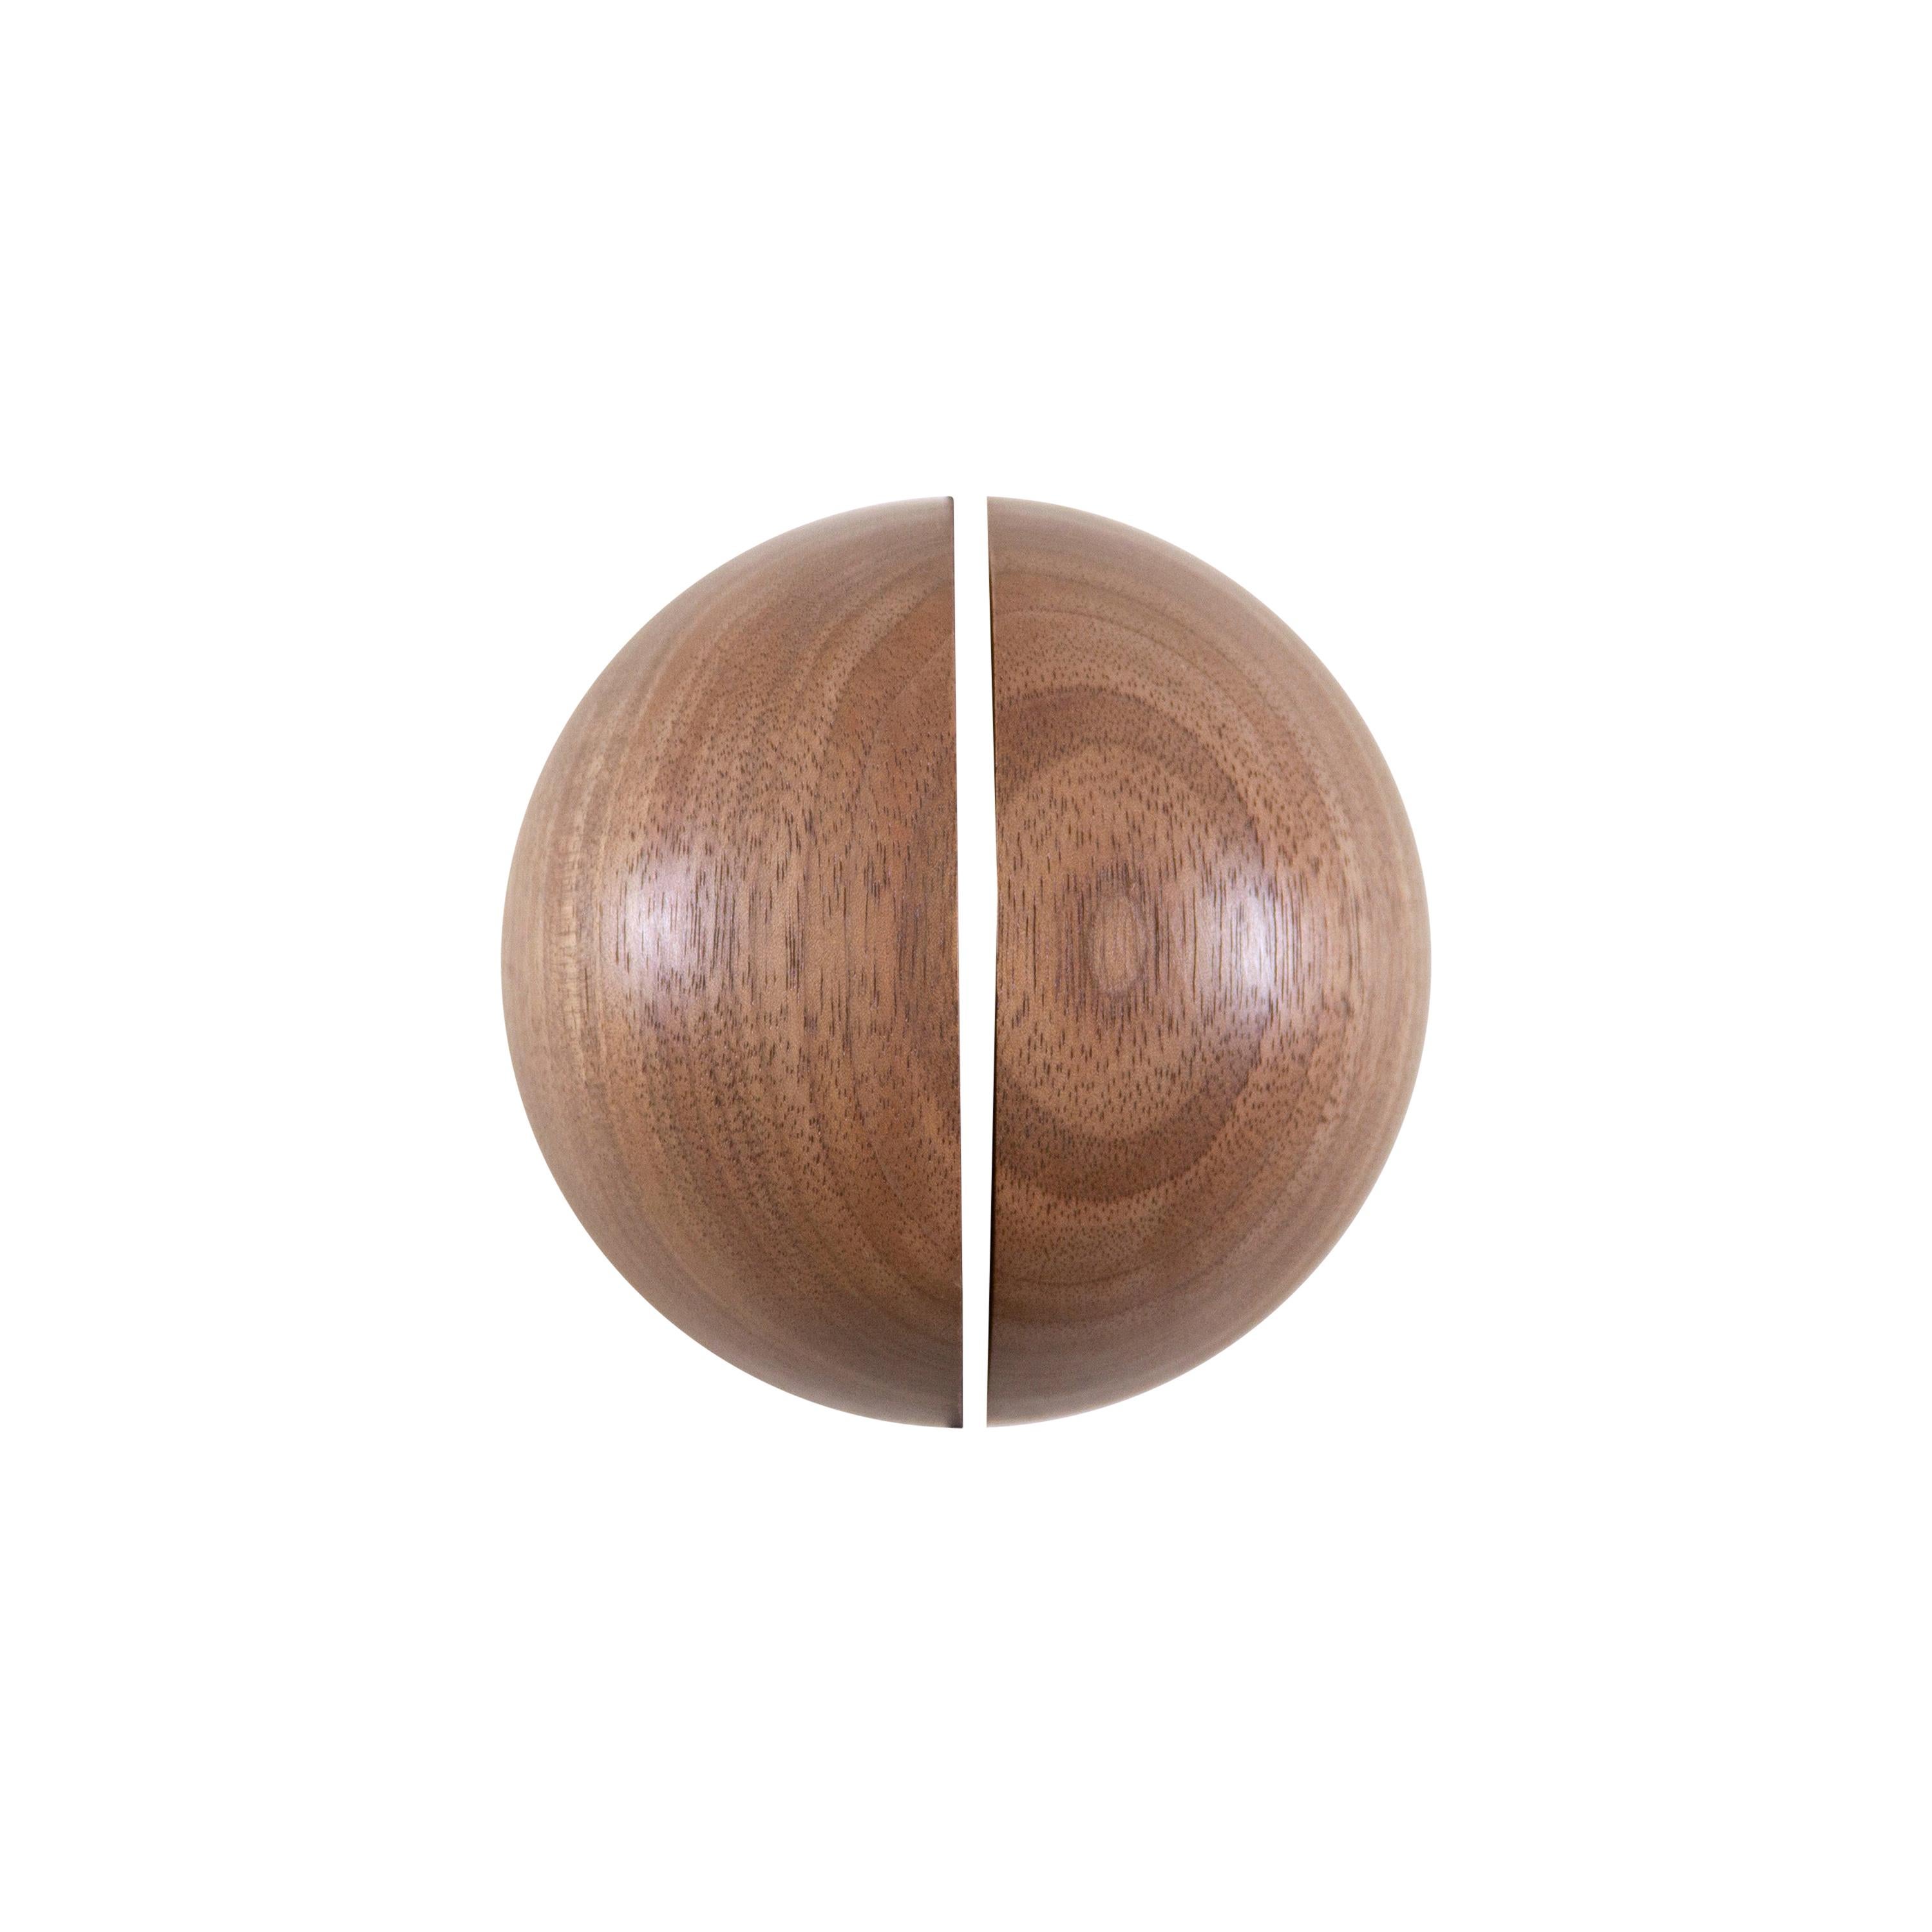 Small Dome Door Handles in Solid Walnut by Estudio Persona